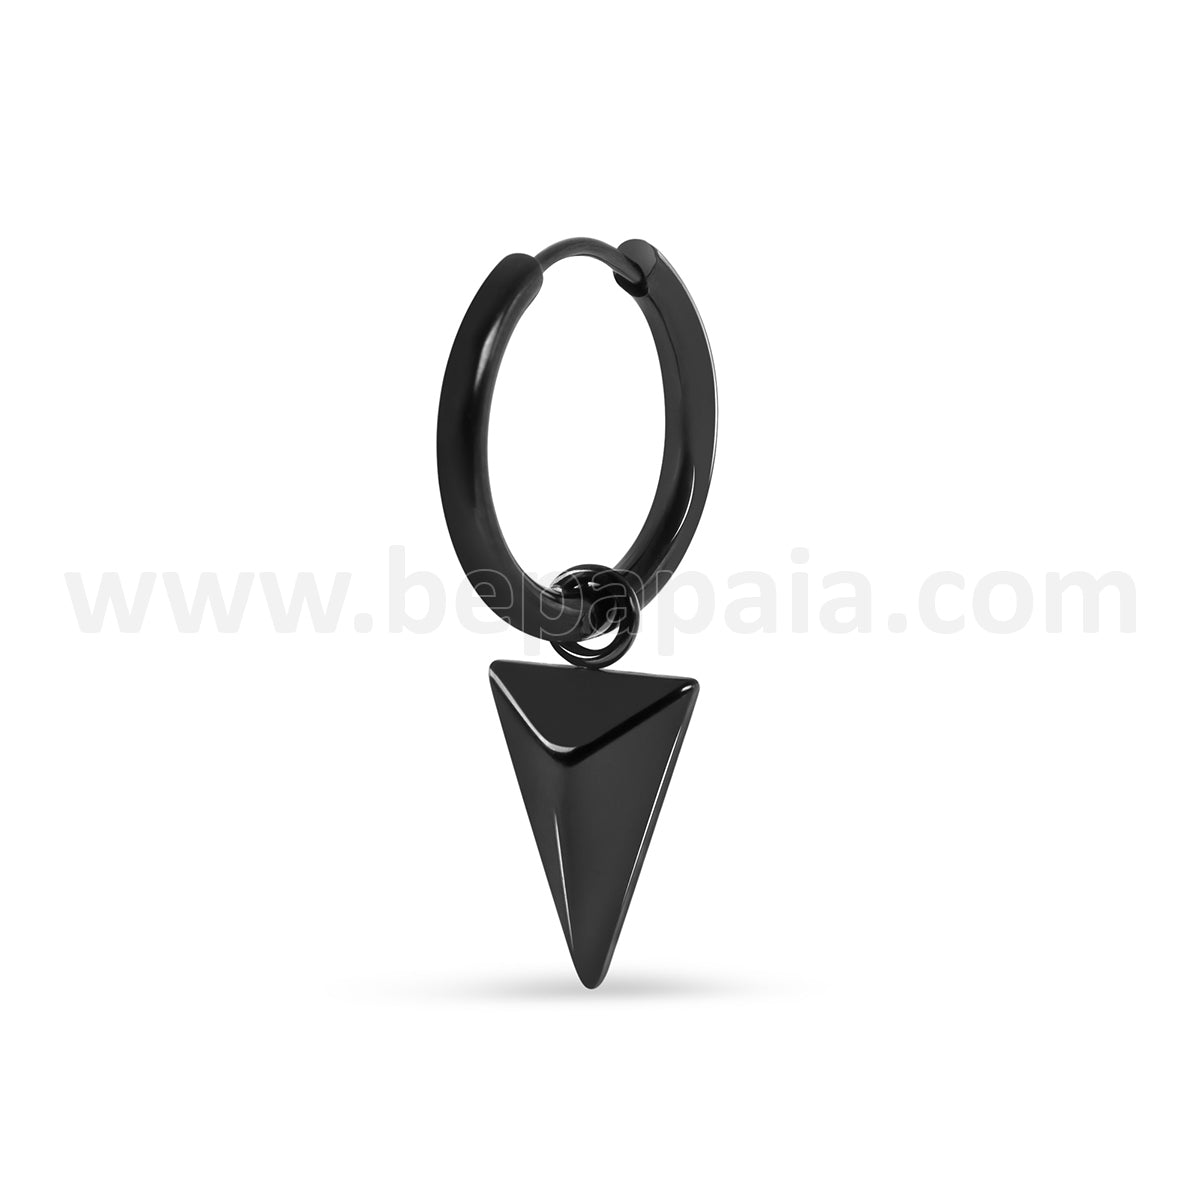 Steel hoop earrings with triangle